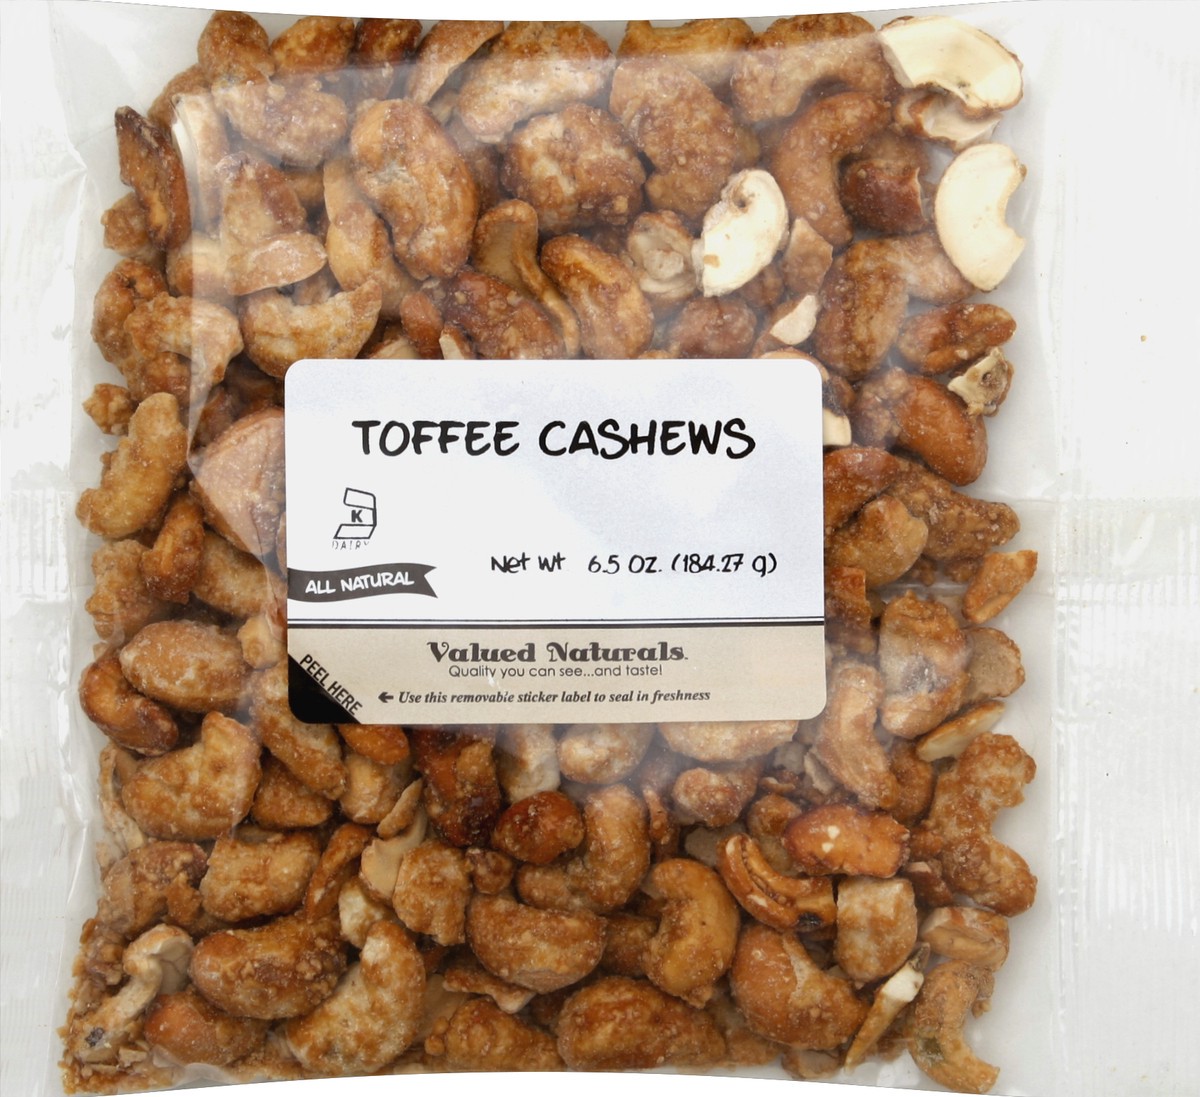 slide 5 of 6, Valued Naturals Toffee Cashews 6.5 oz, 6.5 oz